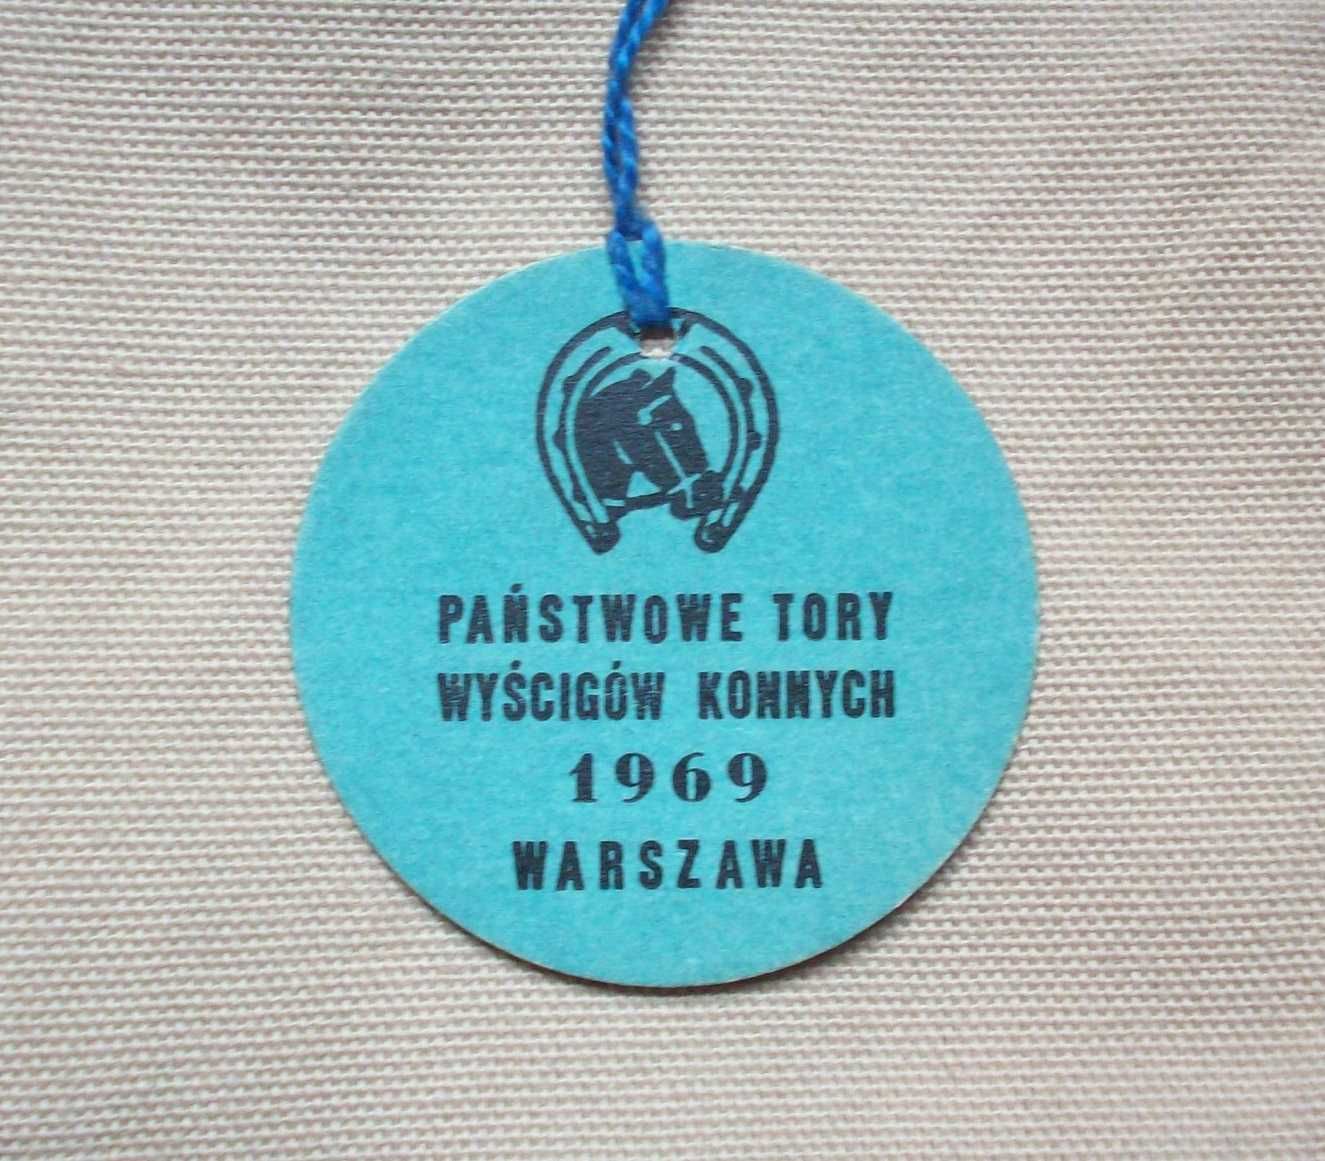 Państwowe Tory Wyścigów Konnych, bilet sezon 1969, trybuna.